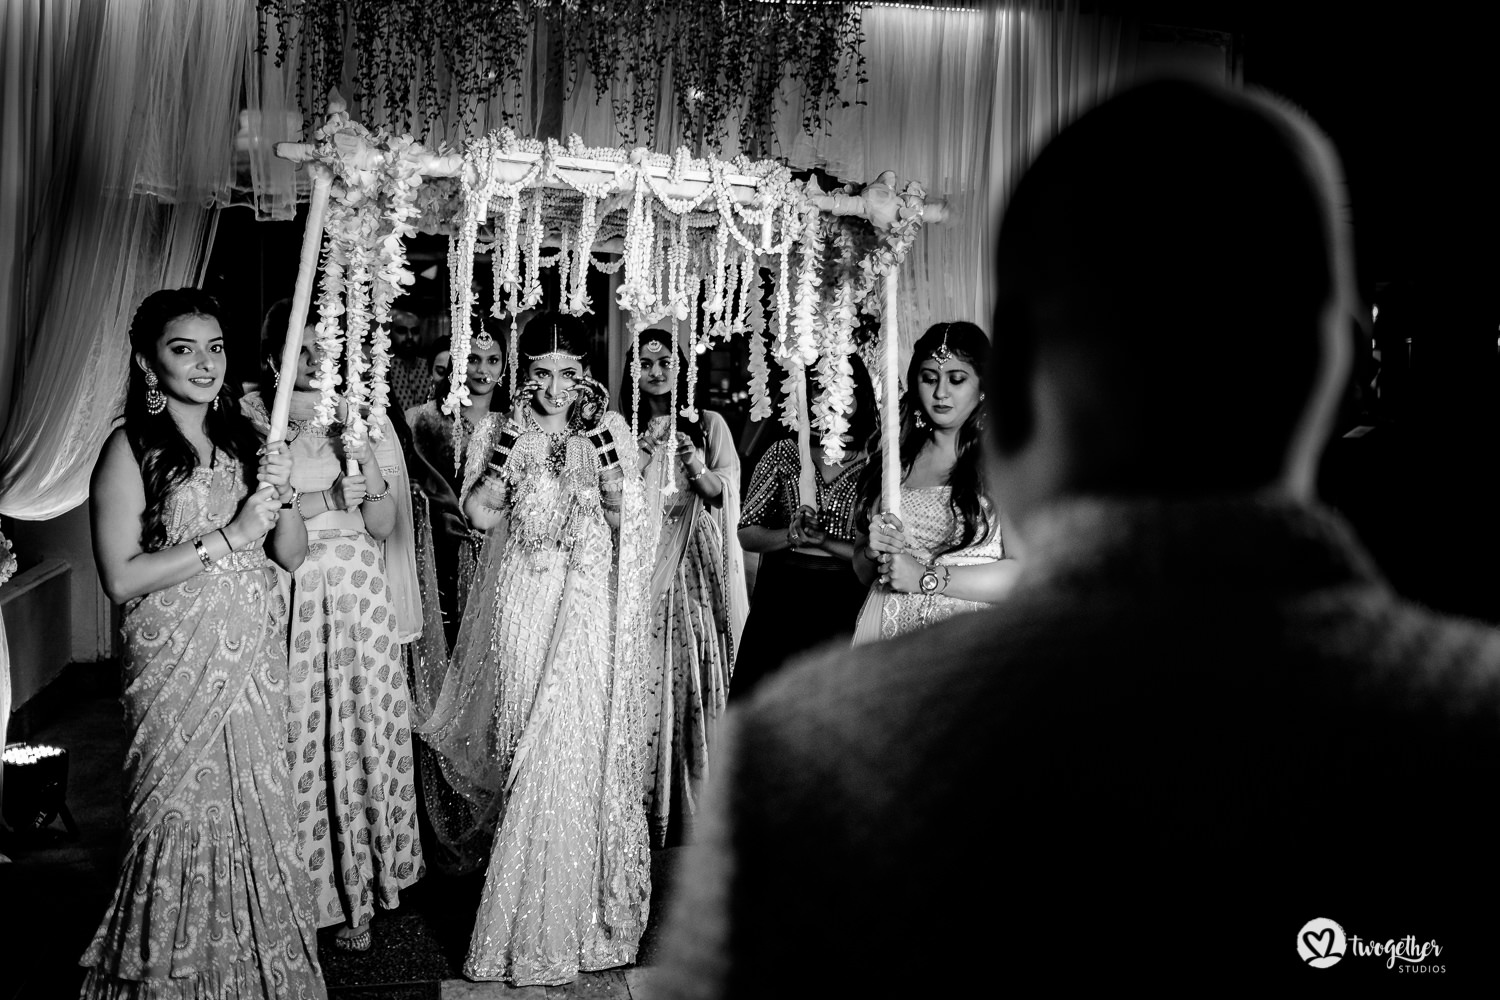 Indian bridal entry at Bangkok destination wedding.